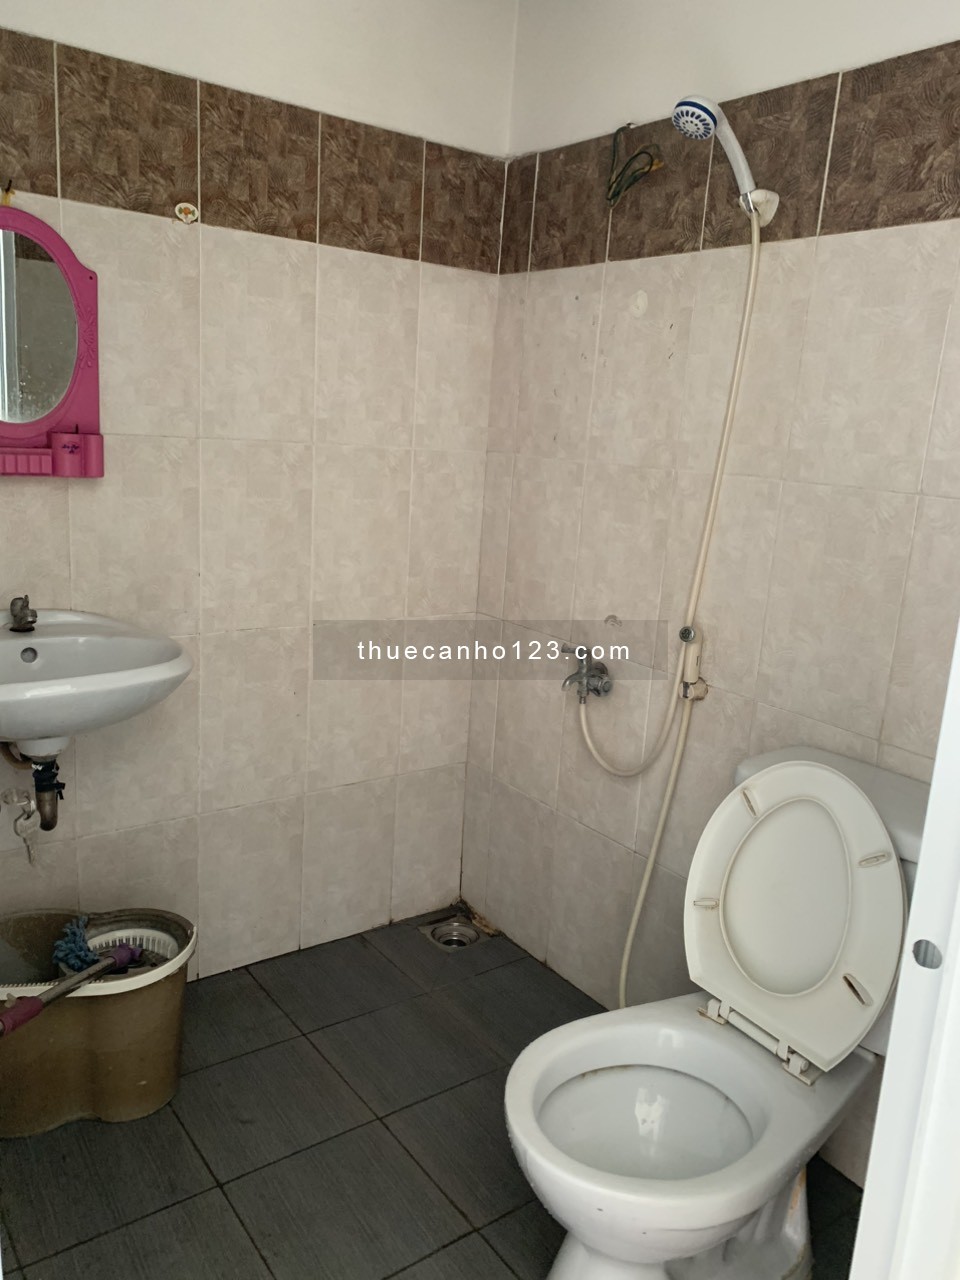 Chính chủ cho thuê gấp căn hộ Quang Thái 2 phòng ngủ 2 toilet giá chỉ 6.5 triệu ở liền